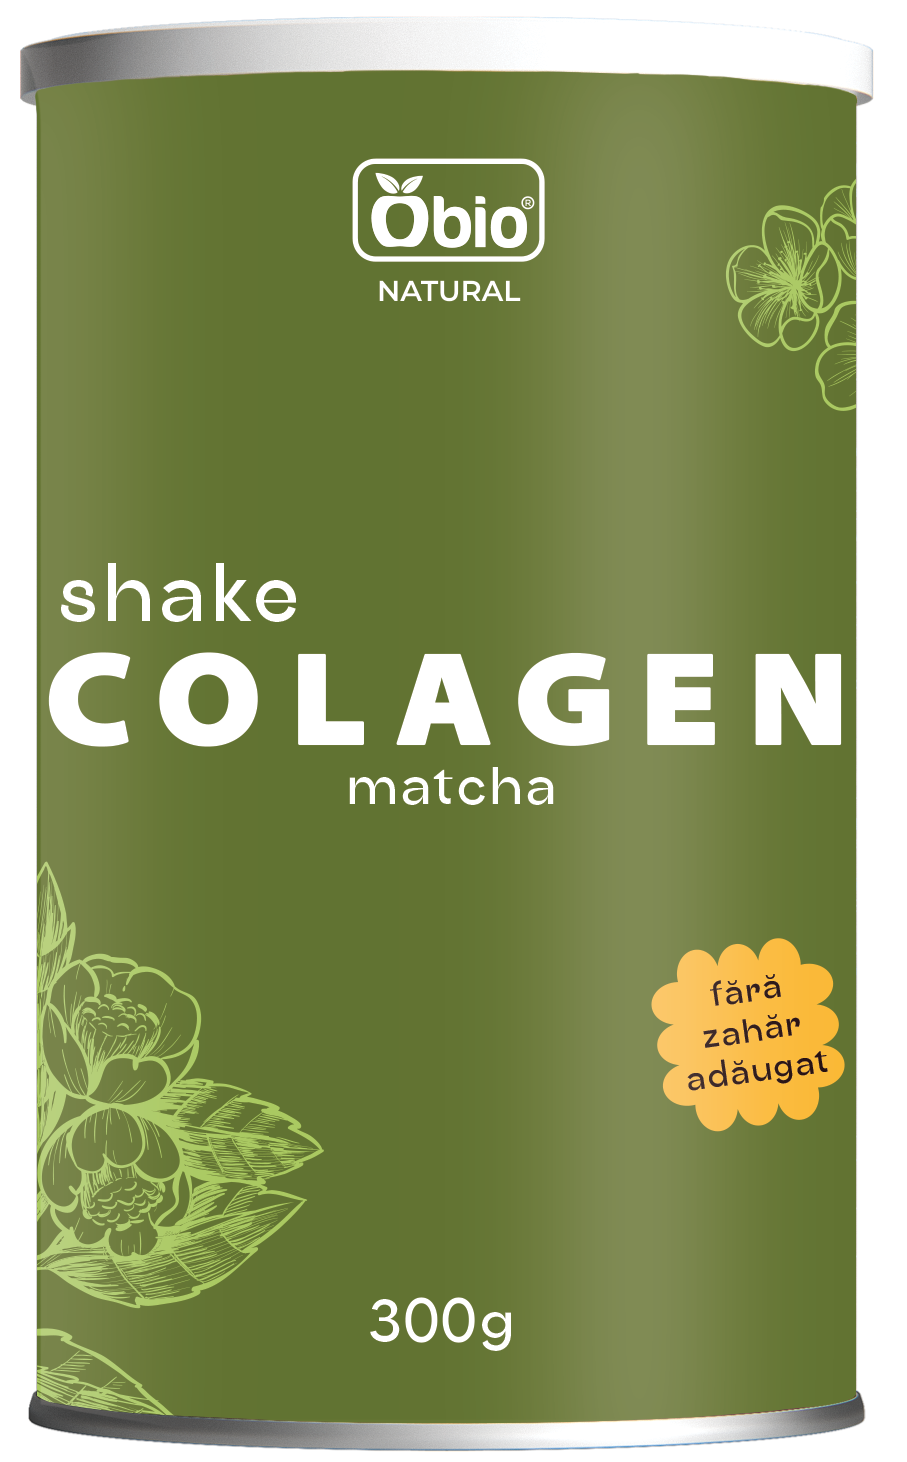 <h2>Colagen shake cu matcha 300g, Obio</h2><p>Colagenul mai este denumit si proteina tineretii. Savureaza o bautura sanatoasa cu colagen, bogata in proteine, cu matcha (pudra de ceai verde), si apa de cocos, fara adaos de zahar. Daca doriti un gust mai dulce, puteti adauga miere sau alt indulcitor natural. Sau puteti condimenta shake-ul dupa preferinte, de exemplu cu un strop de scortisoara, nucsoara, cardamom, etc.</p><p><strong>Ingrediente:</strong> peptide active de colagen bovin (colagen tip 1) 73%, matcha 7%, bautura de orez pudra bio (orez bio, beta glucan din OVAZ, ulei de floarea soarelui bio, sare), apa de cocos pudra (apa de cocos pudra 96%, maltodextrina 4%).</p><p><strong>Mod de preparare:</strong> amestecati 2-3 linguri de produs (aprox. 30g) cu 250ml apa sau lapte. Se poate servi cald sau rece.</p><p>Alergeni: poate contine urme de nuci, gluten.</p><p><strong>Valori nutritionale/100g:<br /></strong>Energie: 1574 kJ / 376 kcal<br />Grasimi: 1,7 g din care acizi grasi saturati 0,4 g <br />Glucide: 23 g din care zaharuri 8,5 g<br />Fibre alimentare: 1,3 g<br />Proteine: 66 g<br />Sare: 0,2 g</p><p>A se pastra in loc uscat si racoros. Dupa fiecare folosire, asigurati-va ca ati pus capacul la loc in mod corect pentru o buna etanseitate.</p><p>Fabricat in Polonia</p><p>Gramaj: 300g</p>